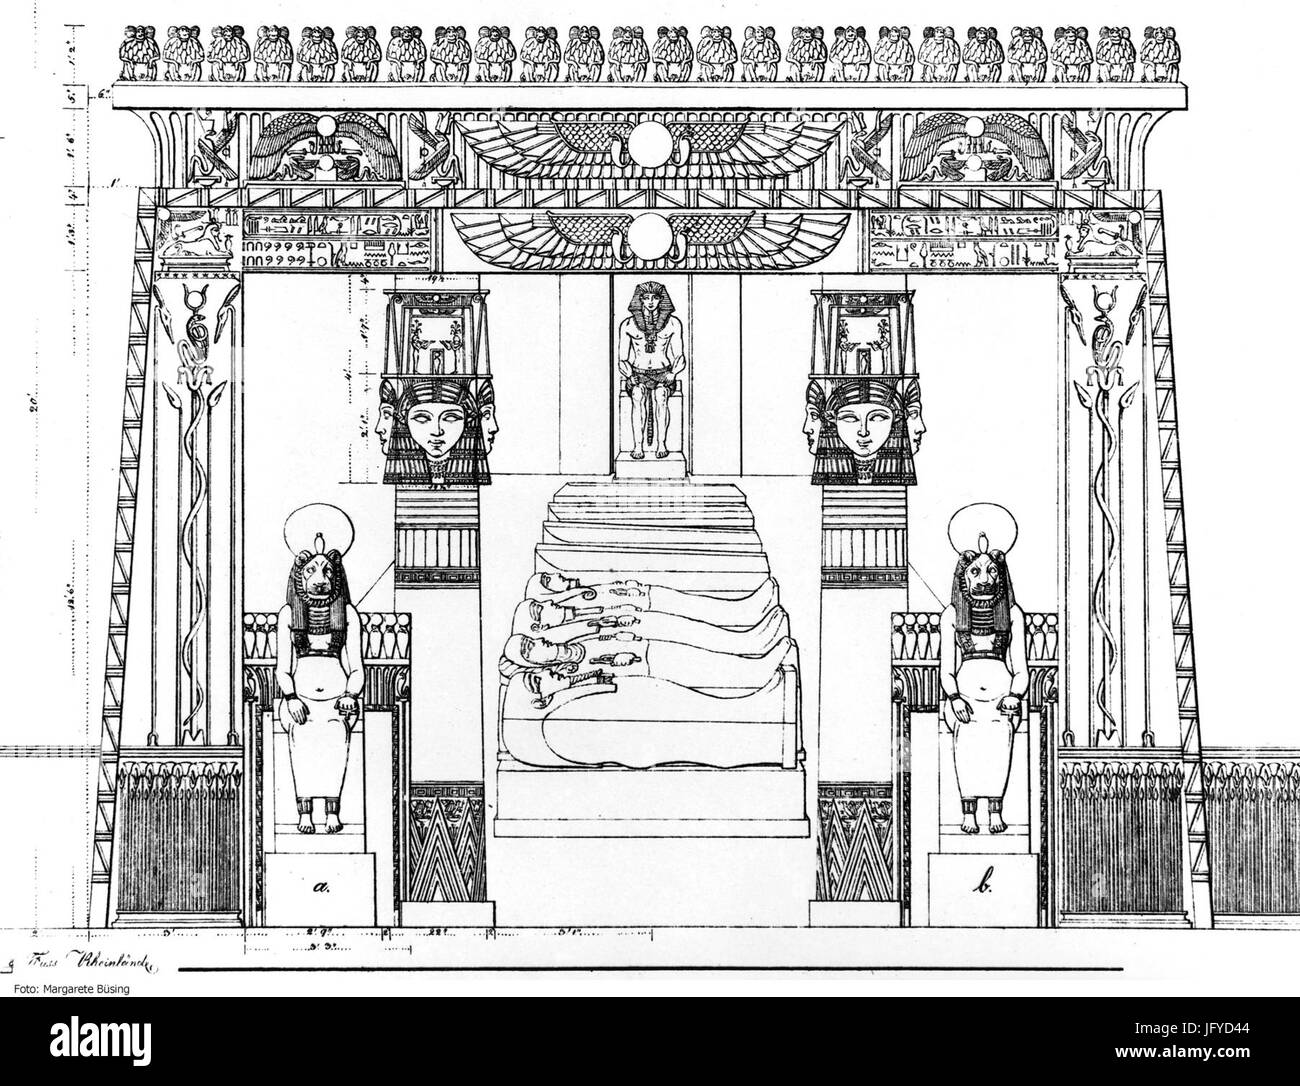 Entwurfszeichnung für die Innenausstattung des Neuen Museums von Giuseppe Passalacqua 1841 Stock Photo